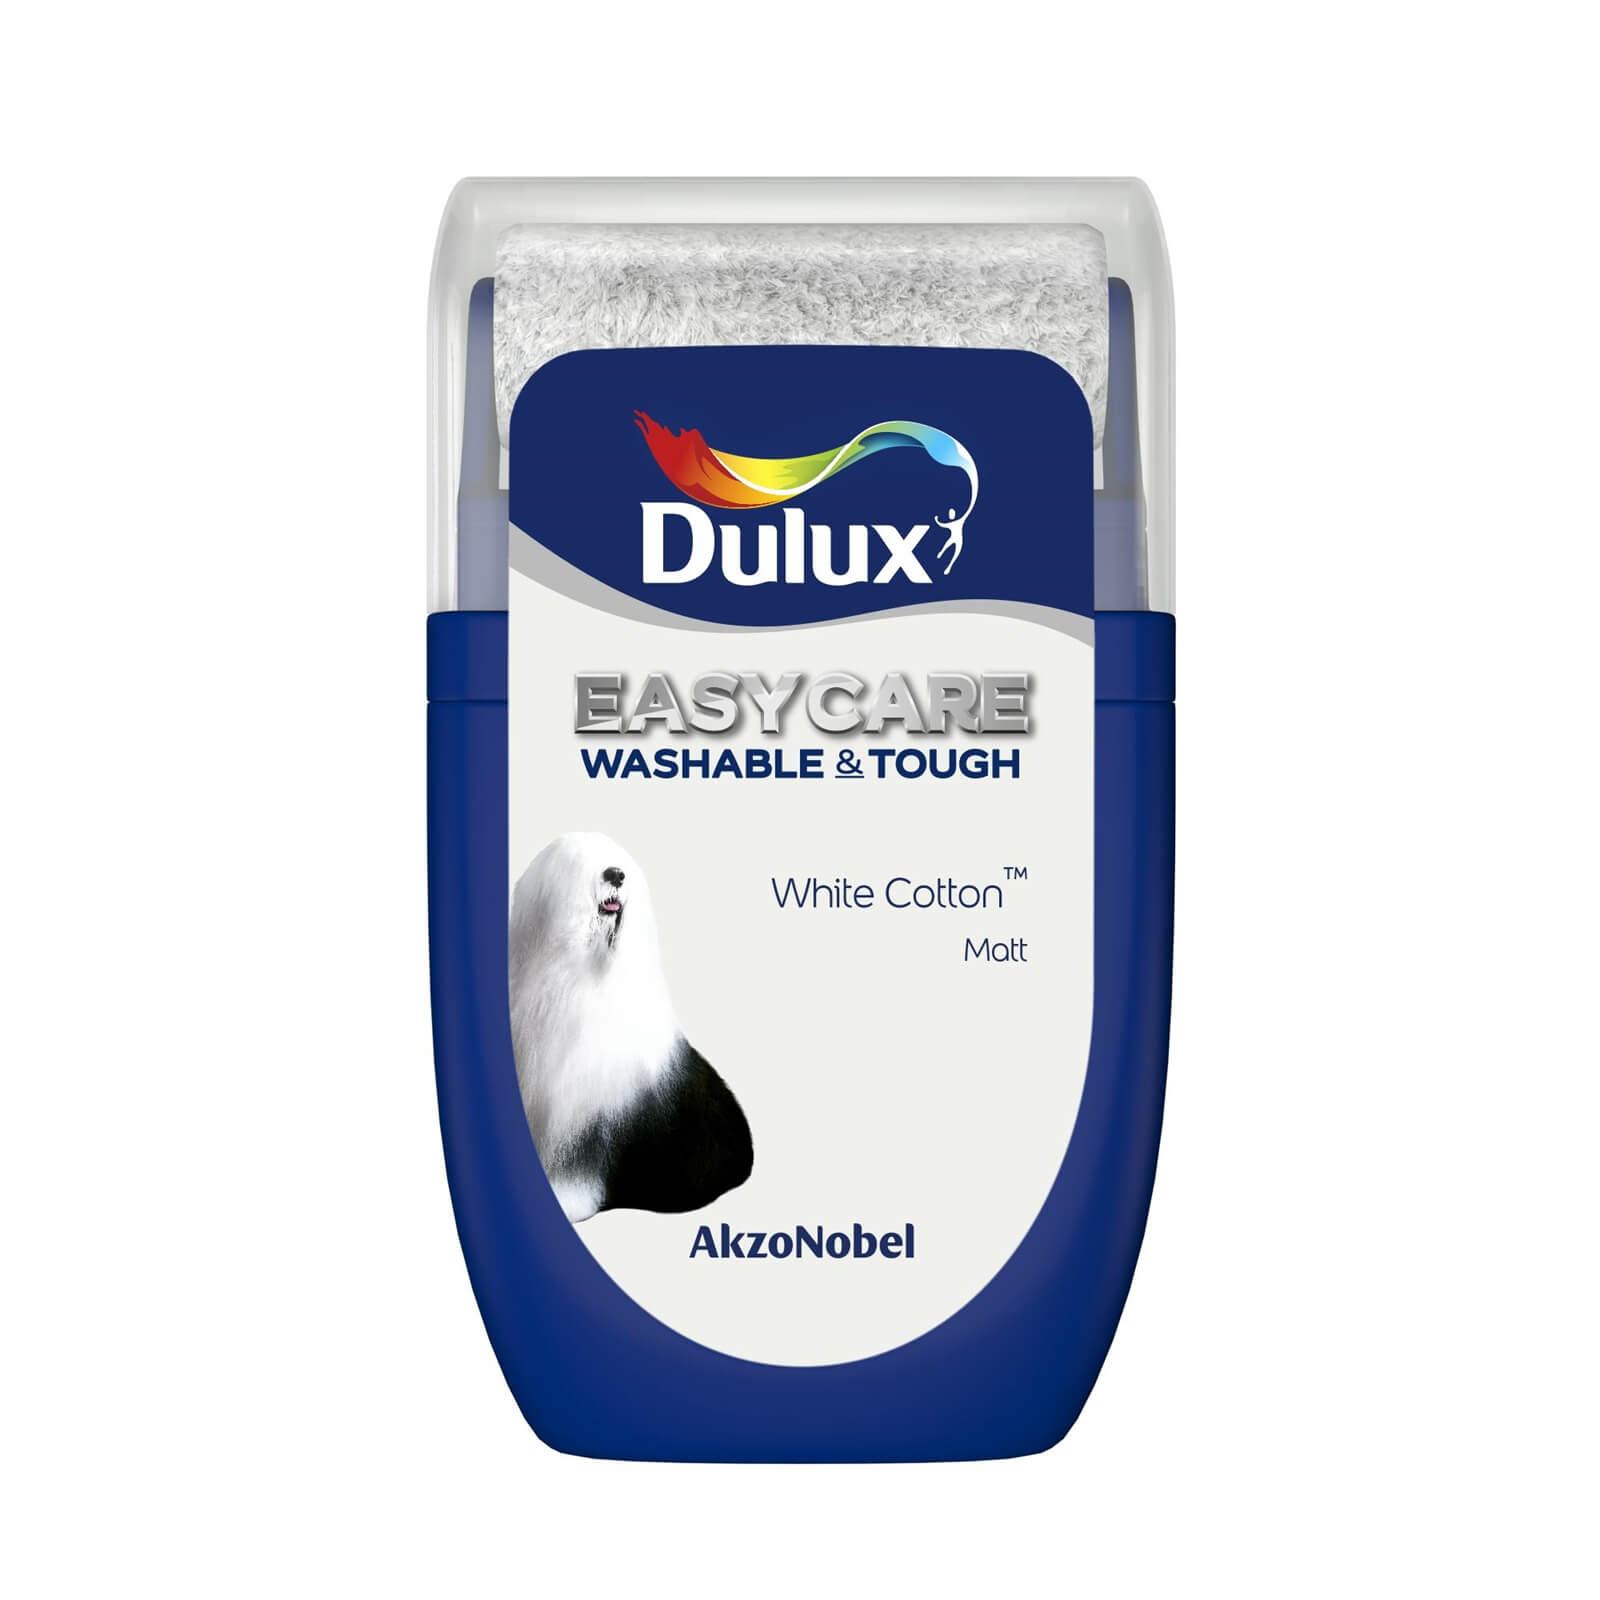 Dulux Easycare Washable & Tough Matt Paint White Cotton - Tester 30ml